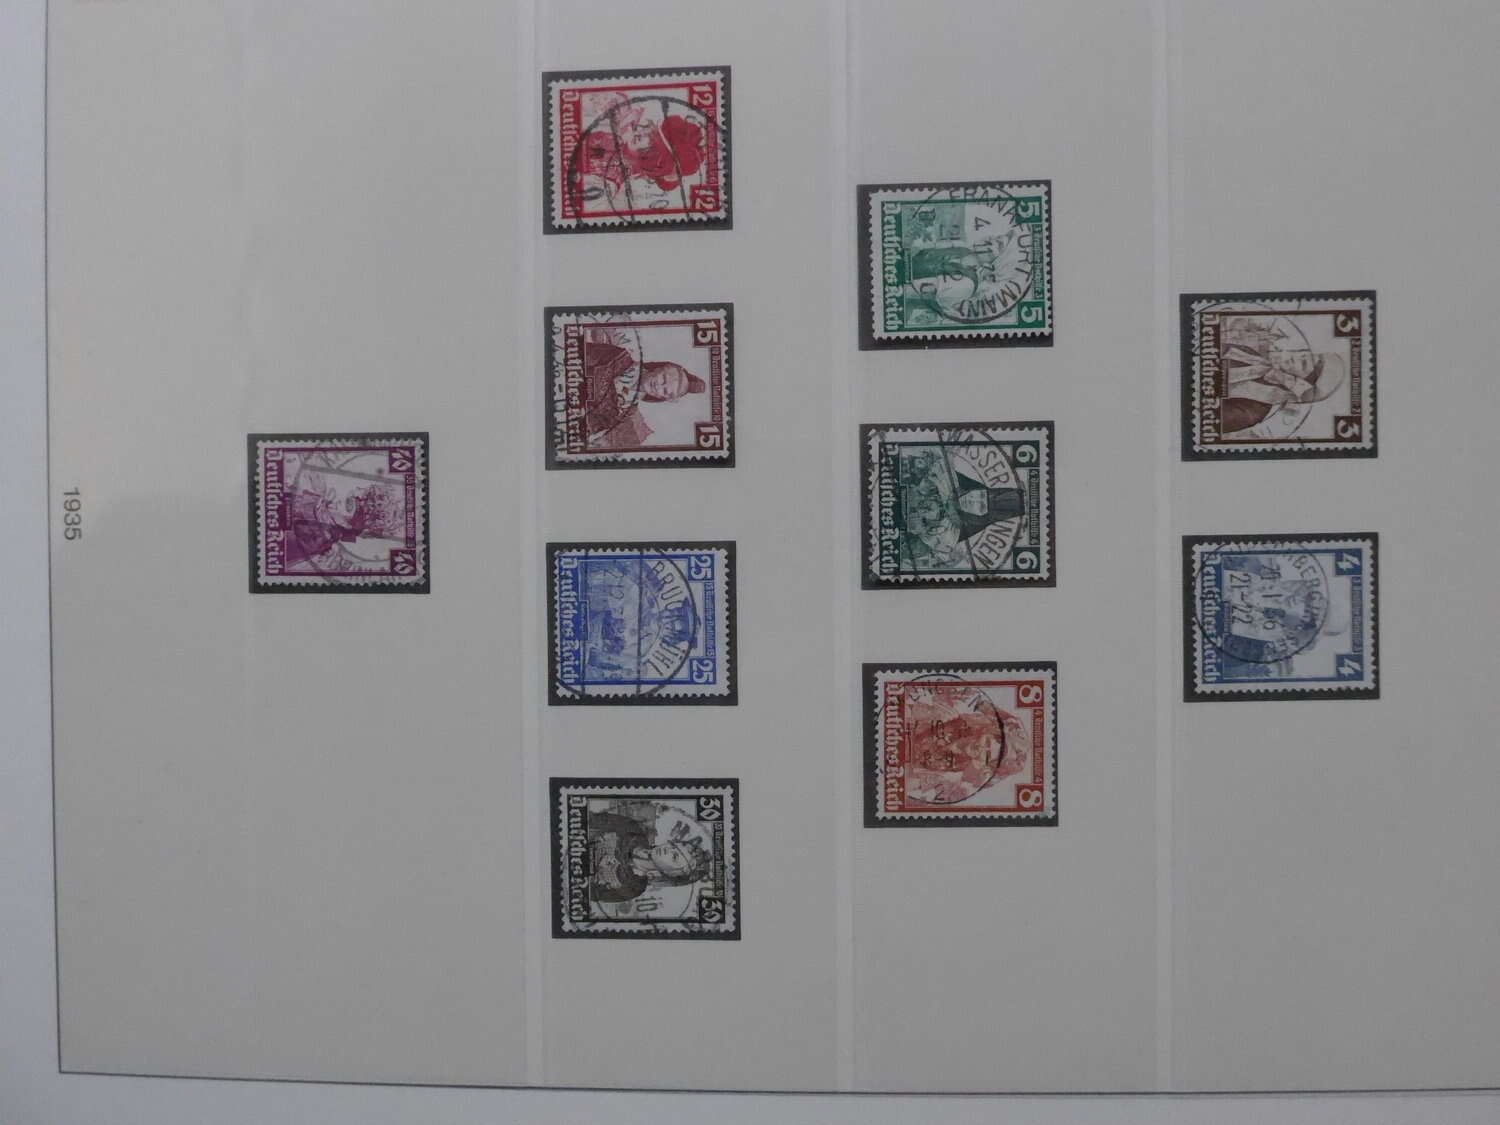 Lot 3 - sammlungen und posten sammlernachlässe -  Deutsche Briefmarken AG 6th Large Lot Auction Deutsche Briefmarken AG